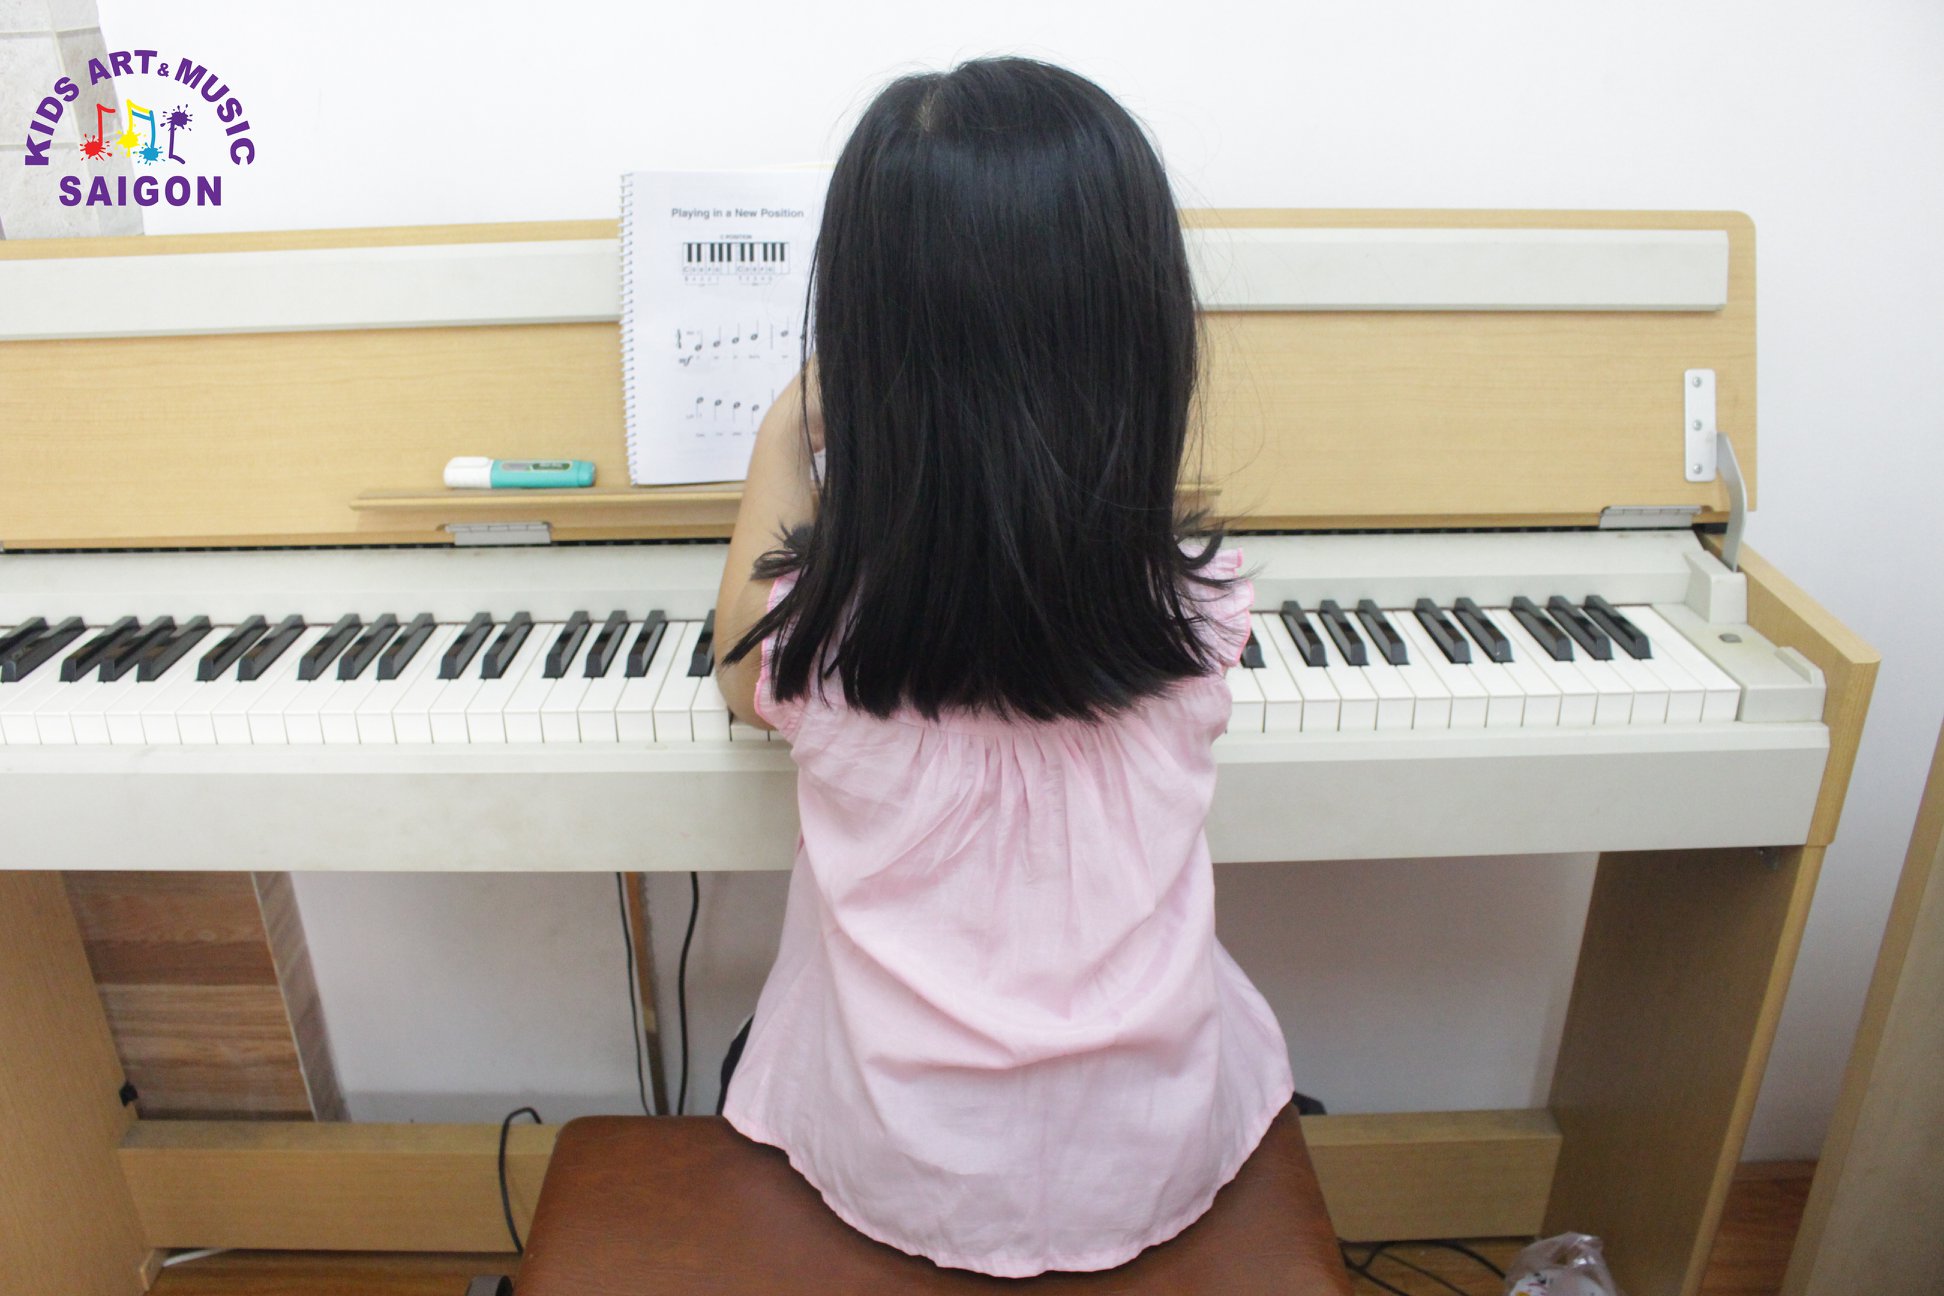 Giới thiệu chương trình học Piano dành cho trẻ em tại Kids Art & Music Saigon - HÌnh ảnh 4